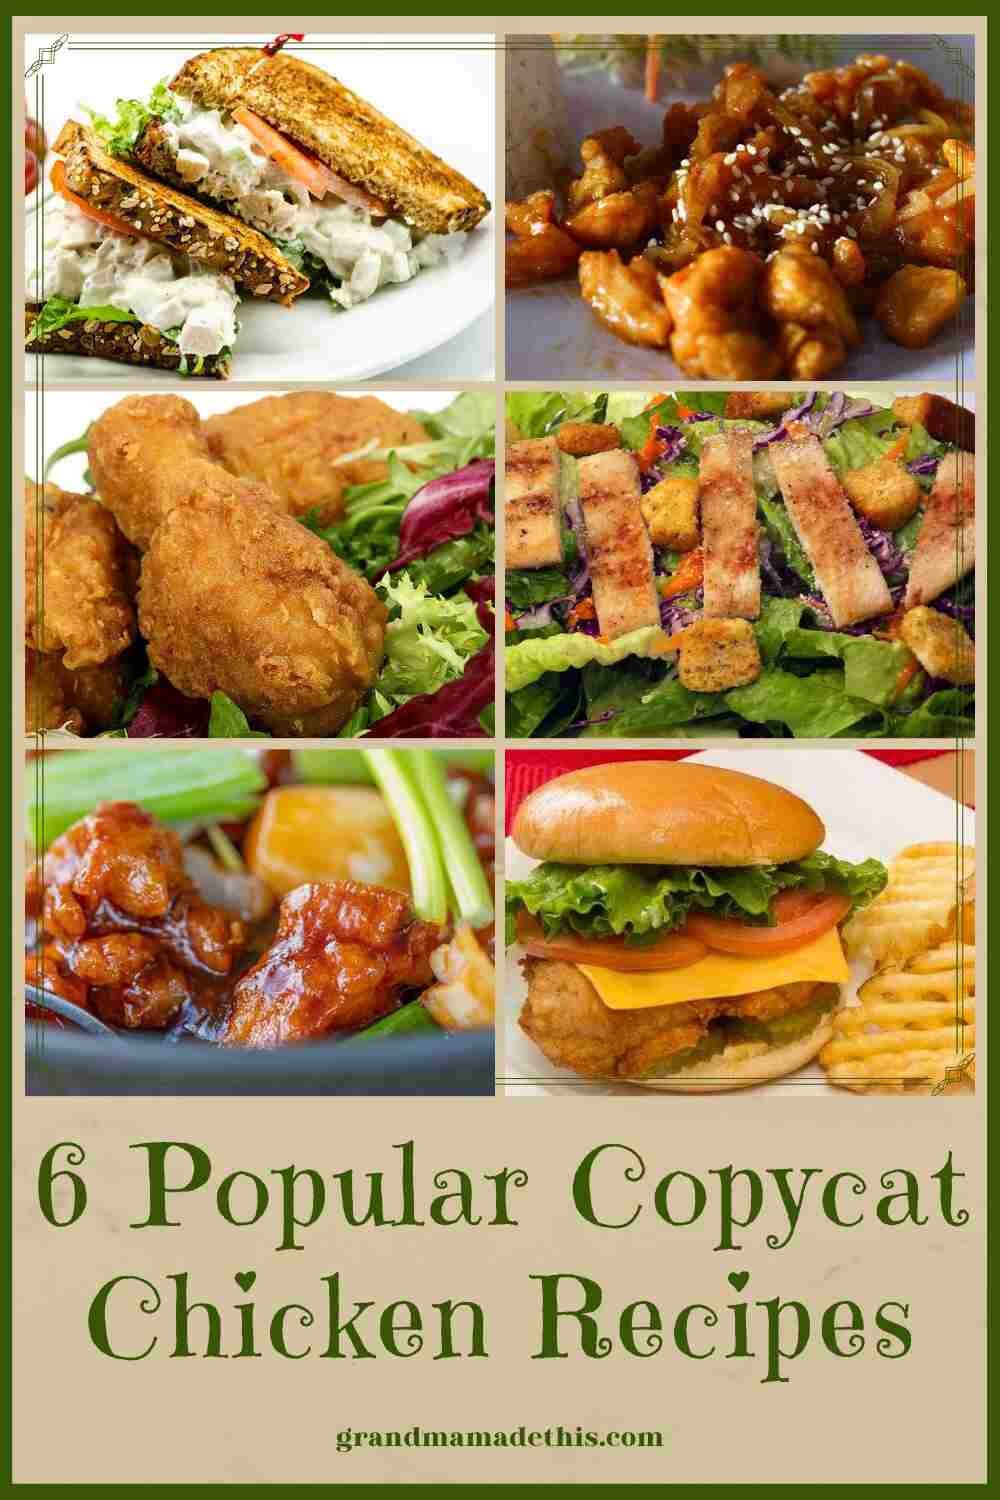 6 Popular Copycat Chicken Recipes